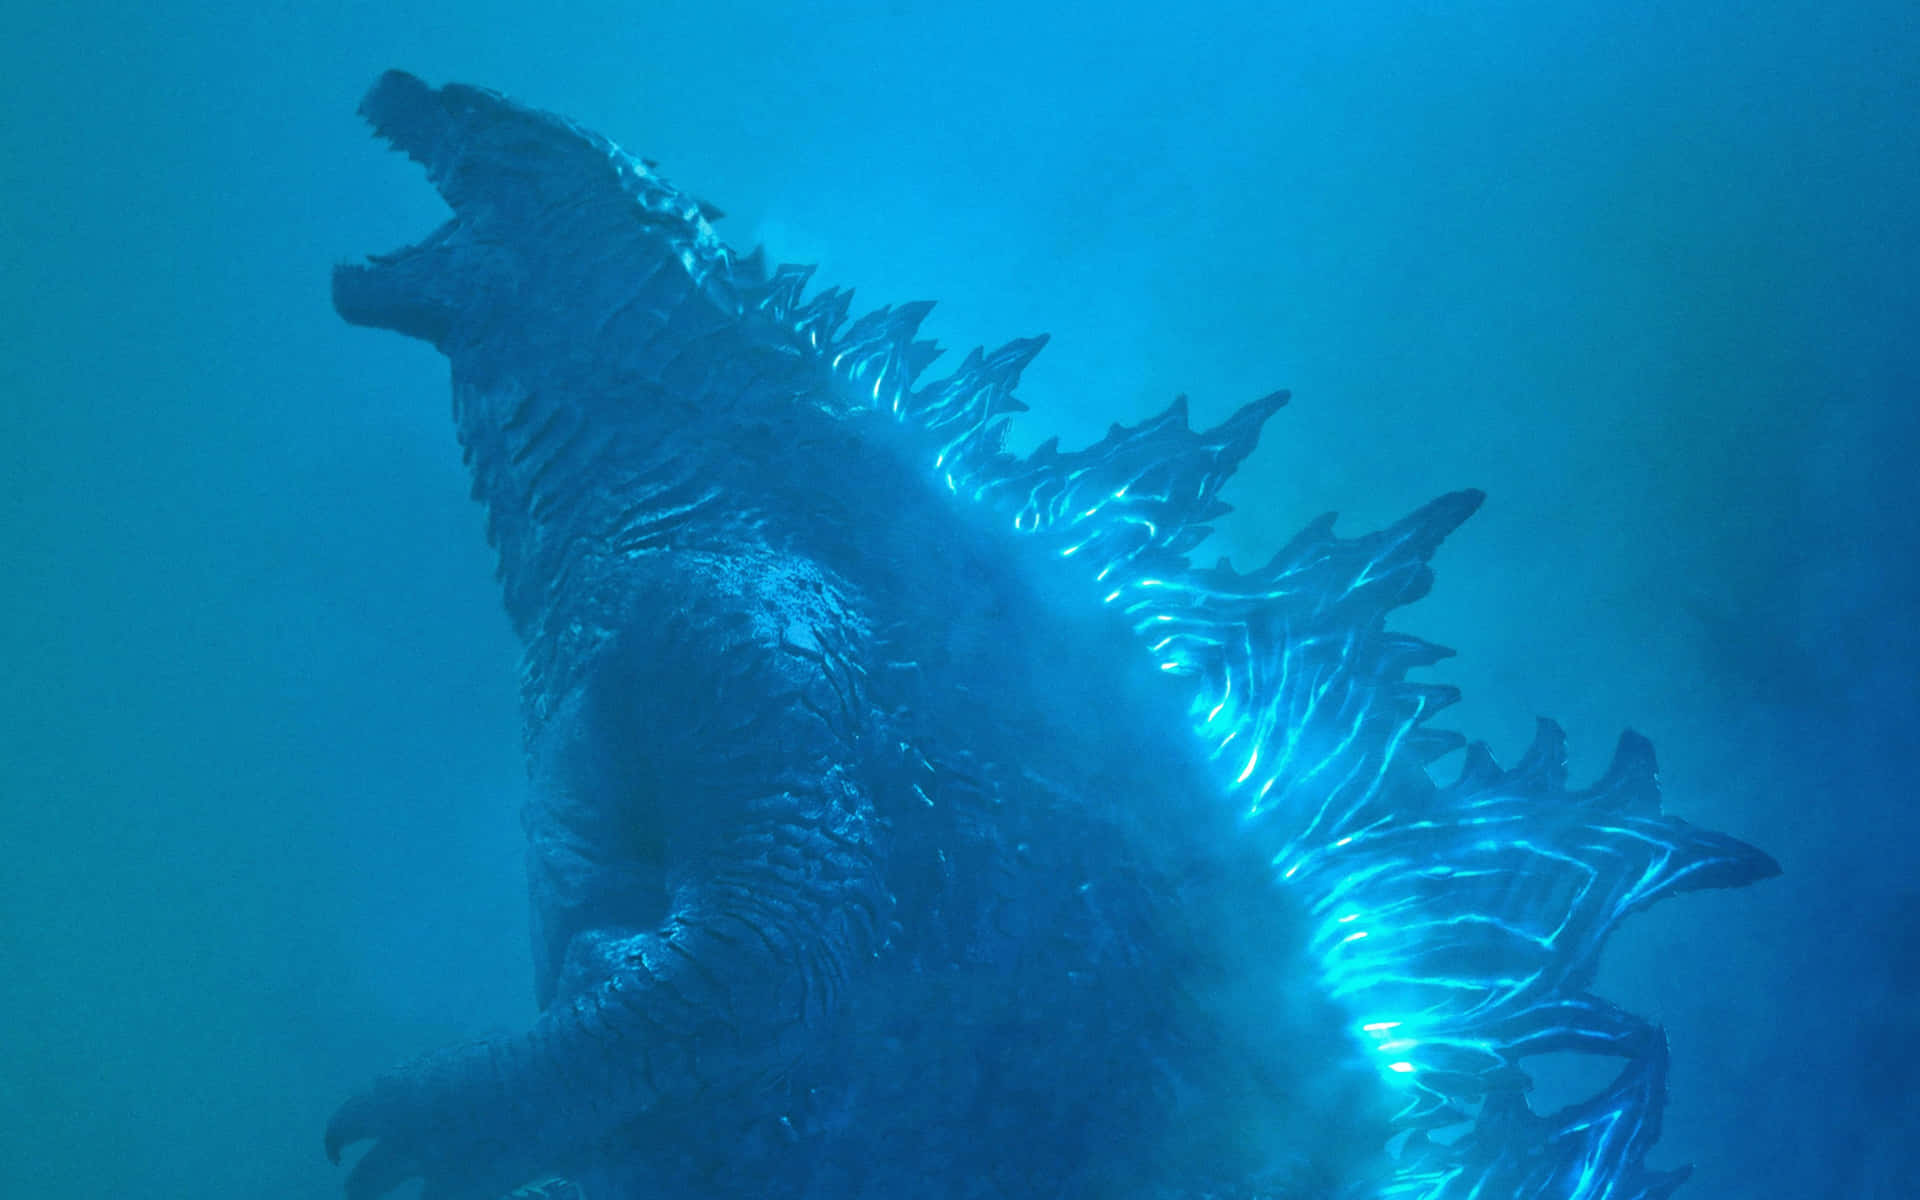 Derkönig Der Monster, Godzilla, Nimmt Eine Furchteinflößende Pose Ein Und Überragt Tokyo.